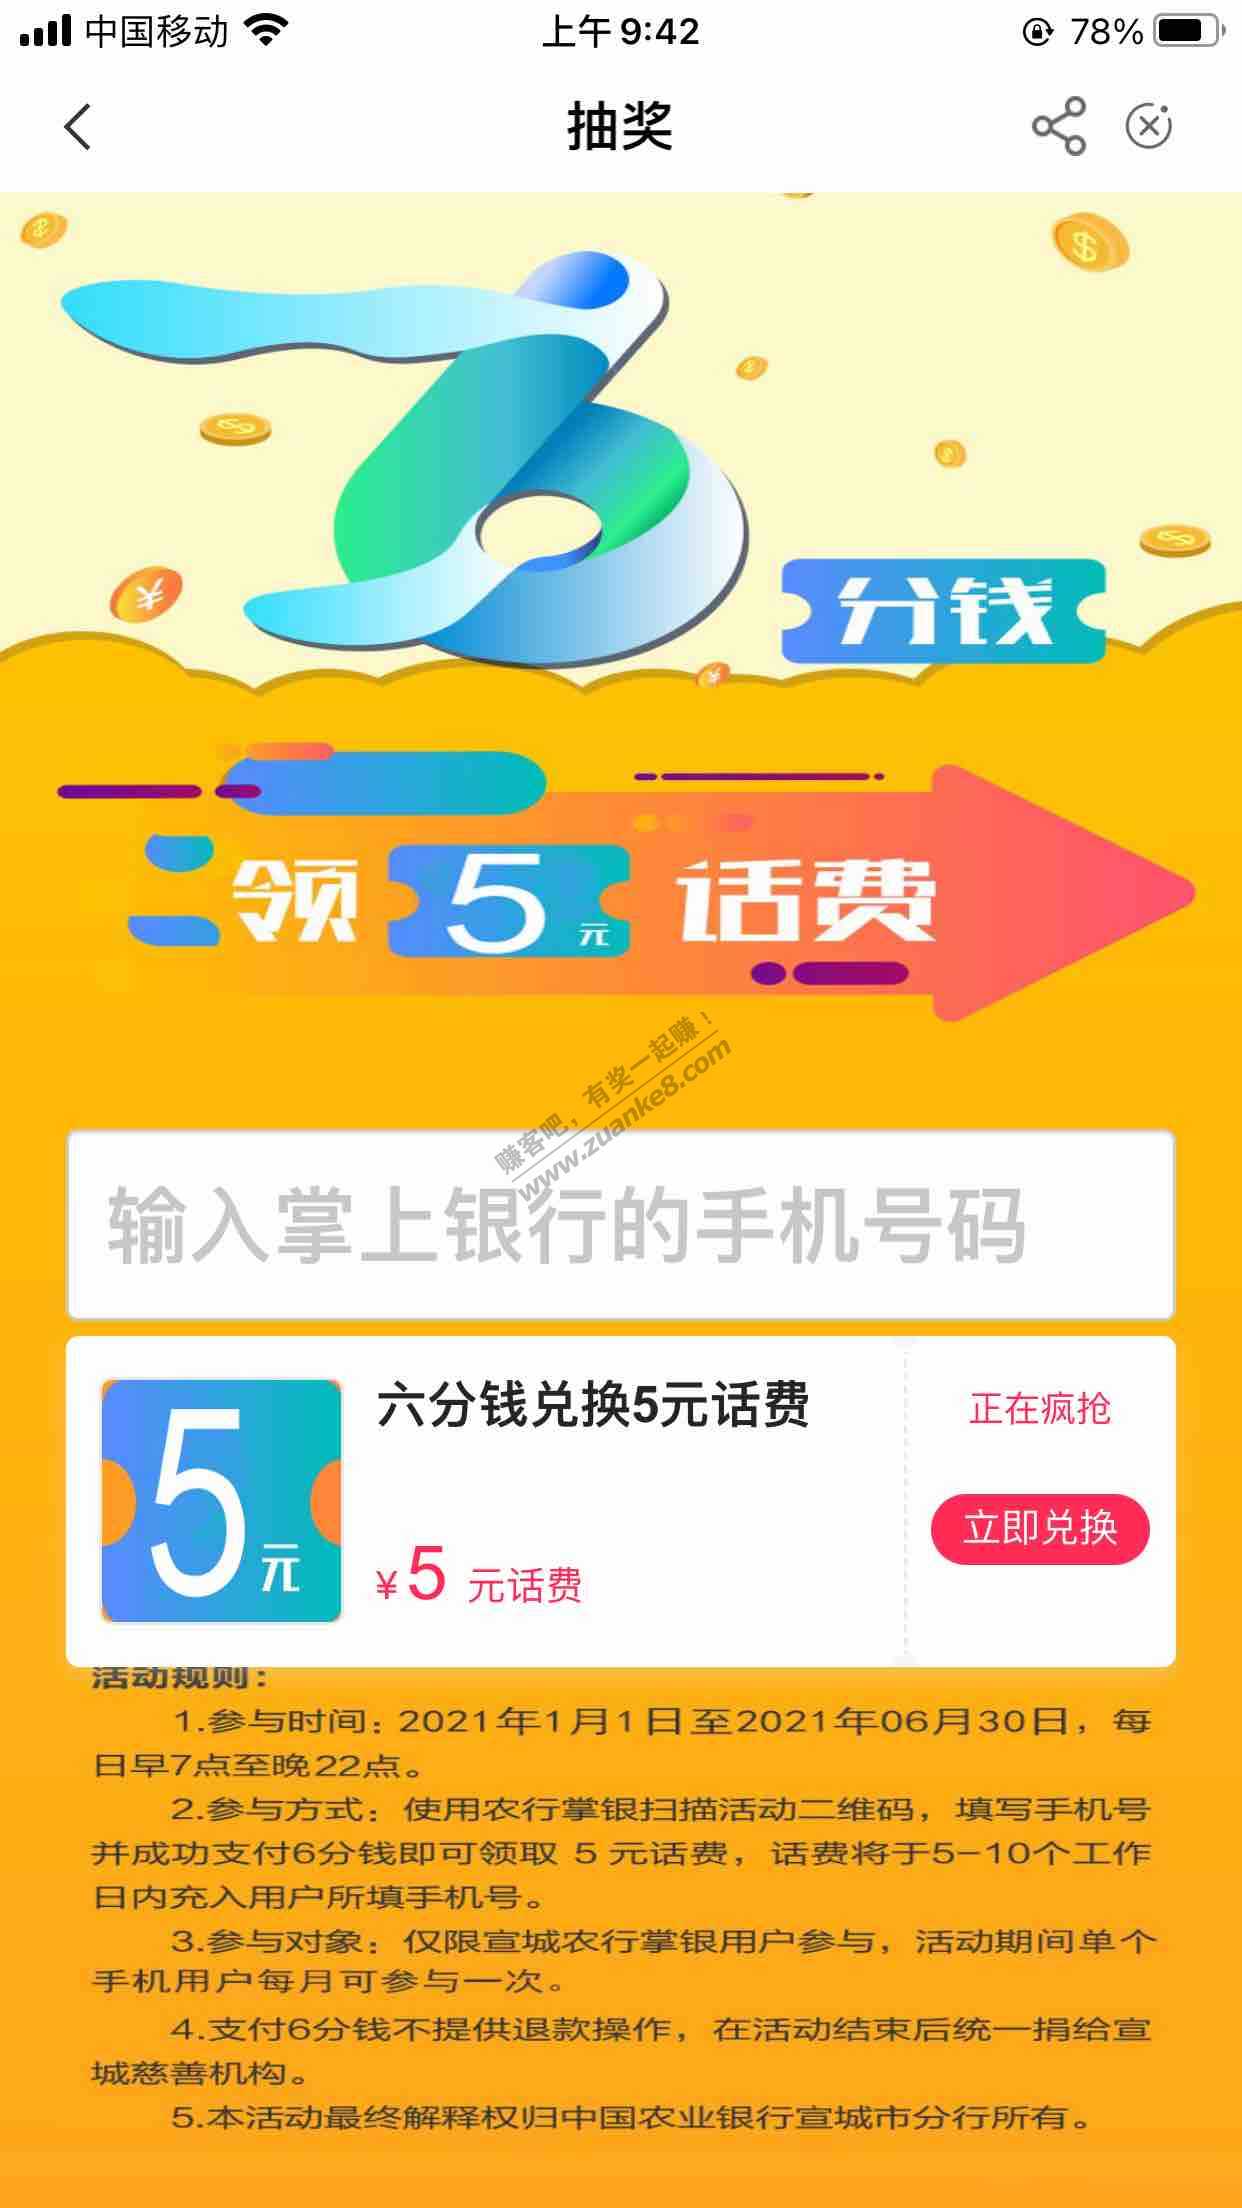 安徽农业手机银行领5块话费-惠小助(52huixz.com)